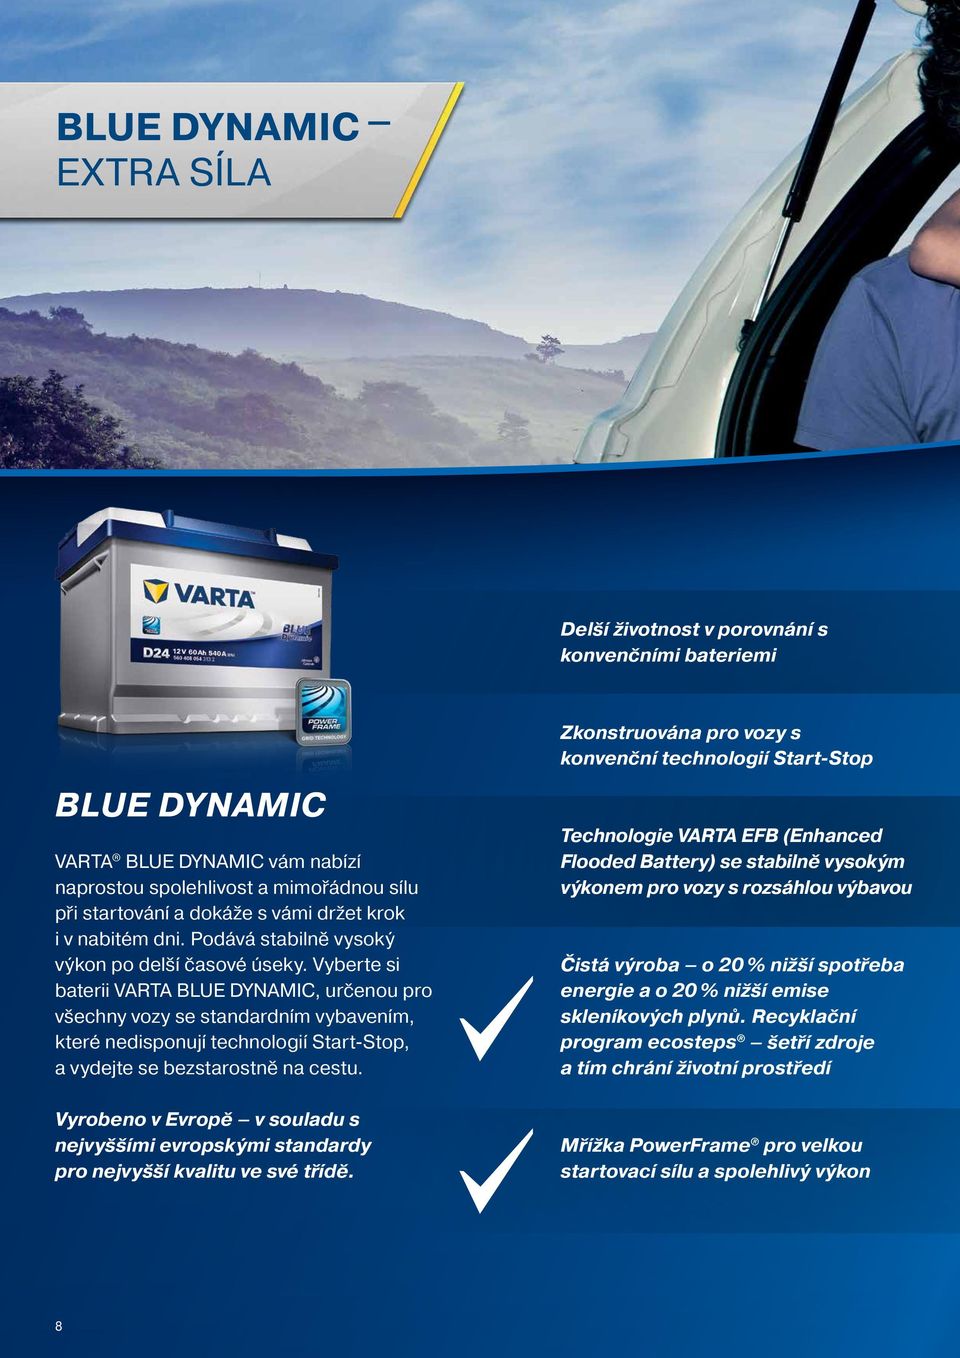 Vyberte si baterii VARTA BLUE DYNAMIC, určenou pro všechny vozy se standardním vybavením, které nedisponují technologií Start-Stop, a vydejte se bezstarostně na cestu.